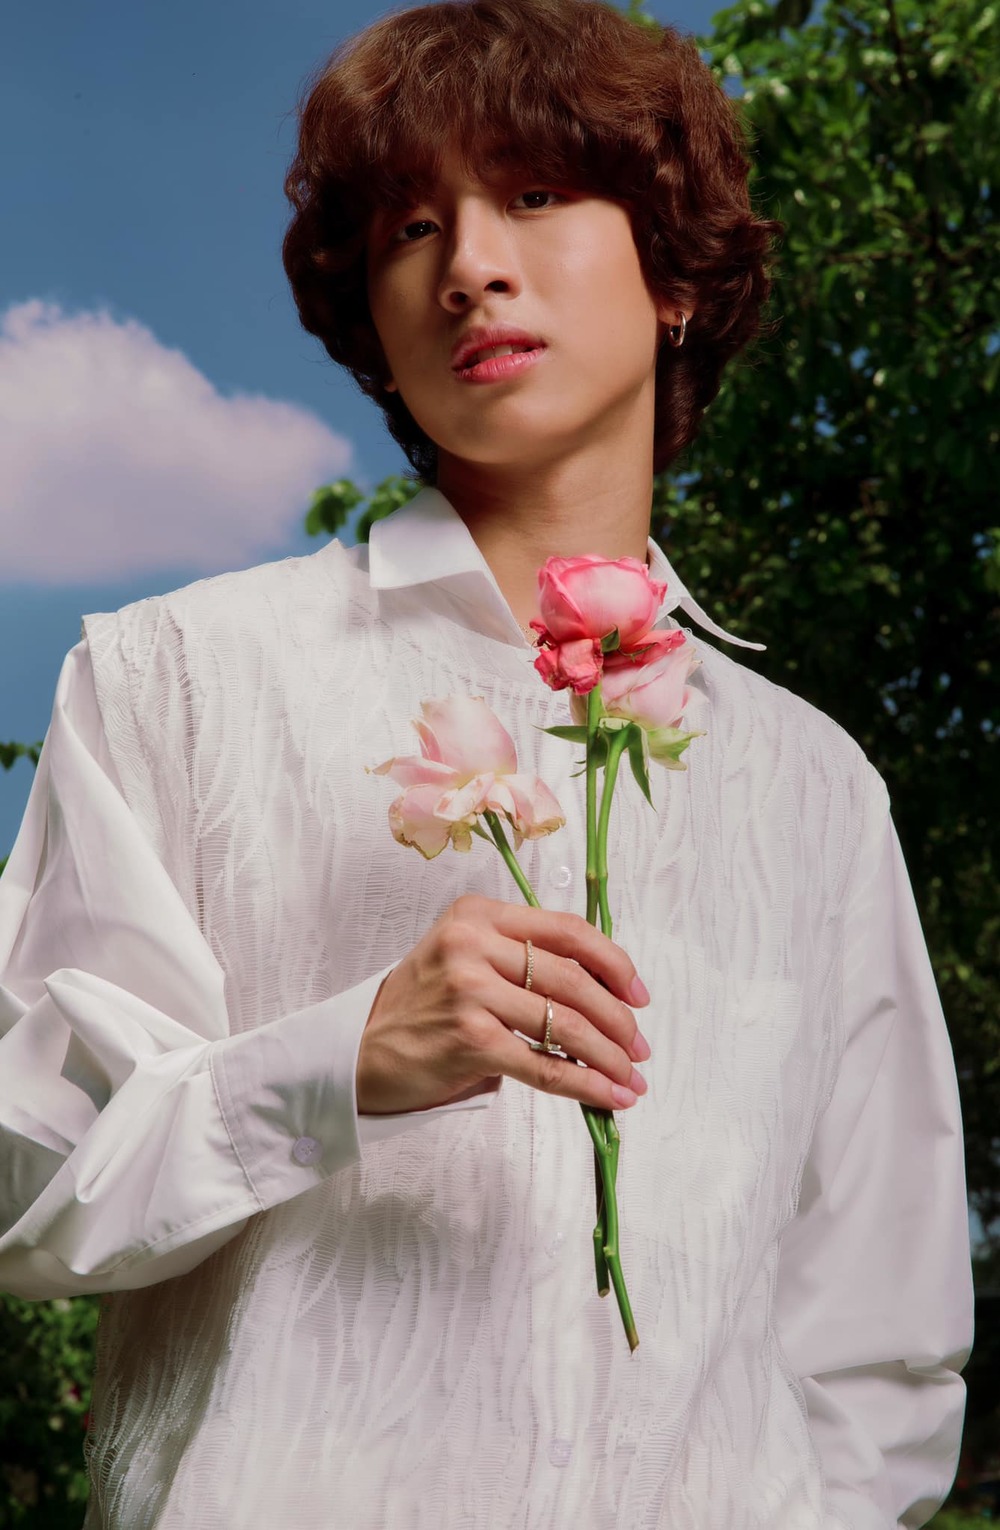  
Gia Khiêm trong một bộ ảnh với concept lãng tử. Outfit sơ mi trắng kết hợp áo ghi-lê cùng màu và cành hoa hồng đậm phong cách hoàng tử khiến ai nấy đều xuýt xoa. (Ảnh: FBNV)